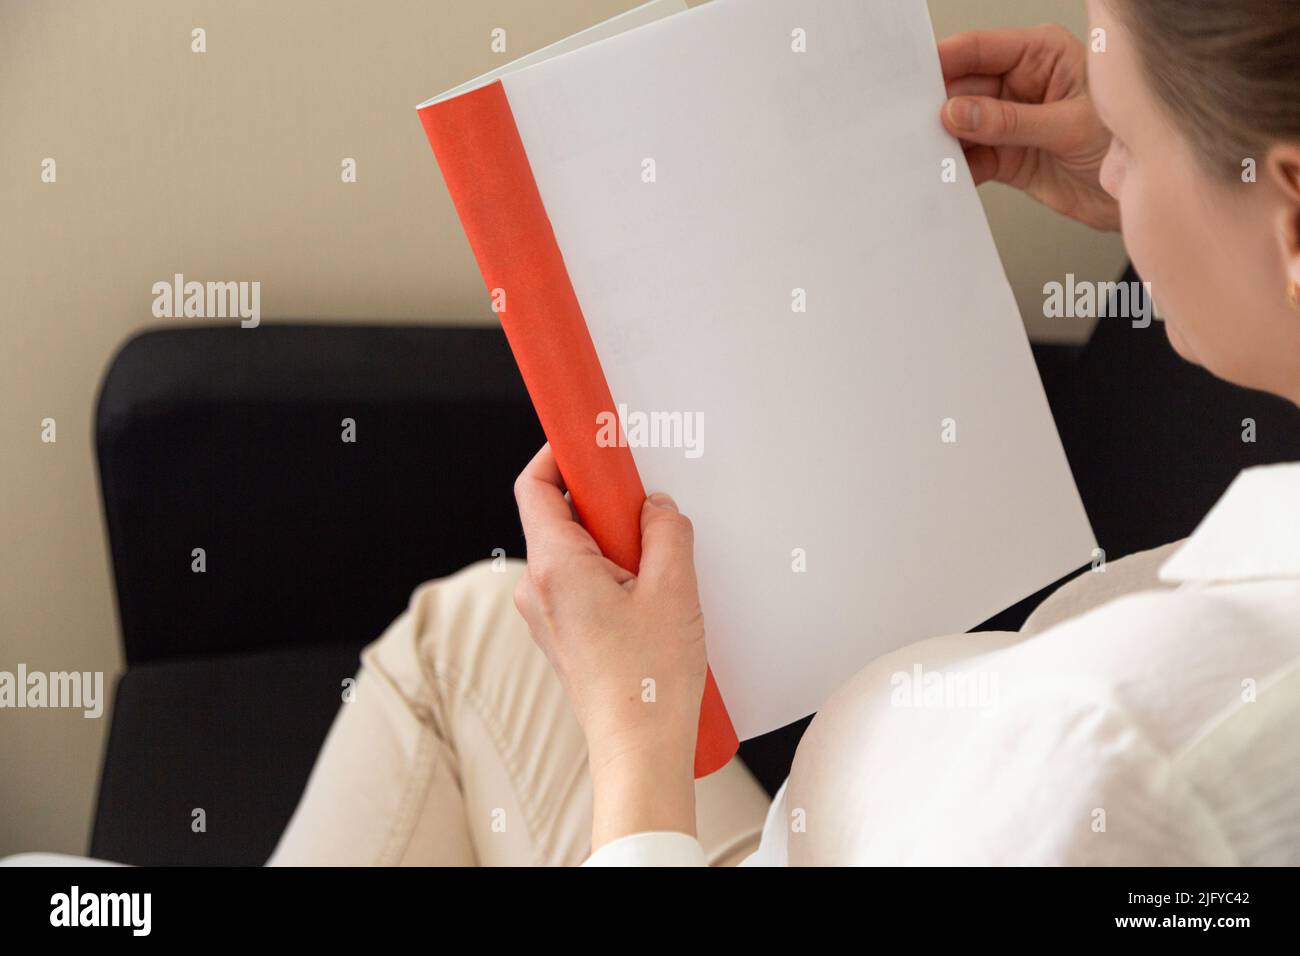 Die Hand hält ein weißes Magazin mit leerem Deckblatt. Hand in Hemd halten klar Magazin Mockup Vorlage. A4 Buch Softcover Oberflächengestaltung. Stockfoto